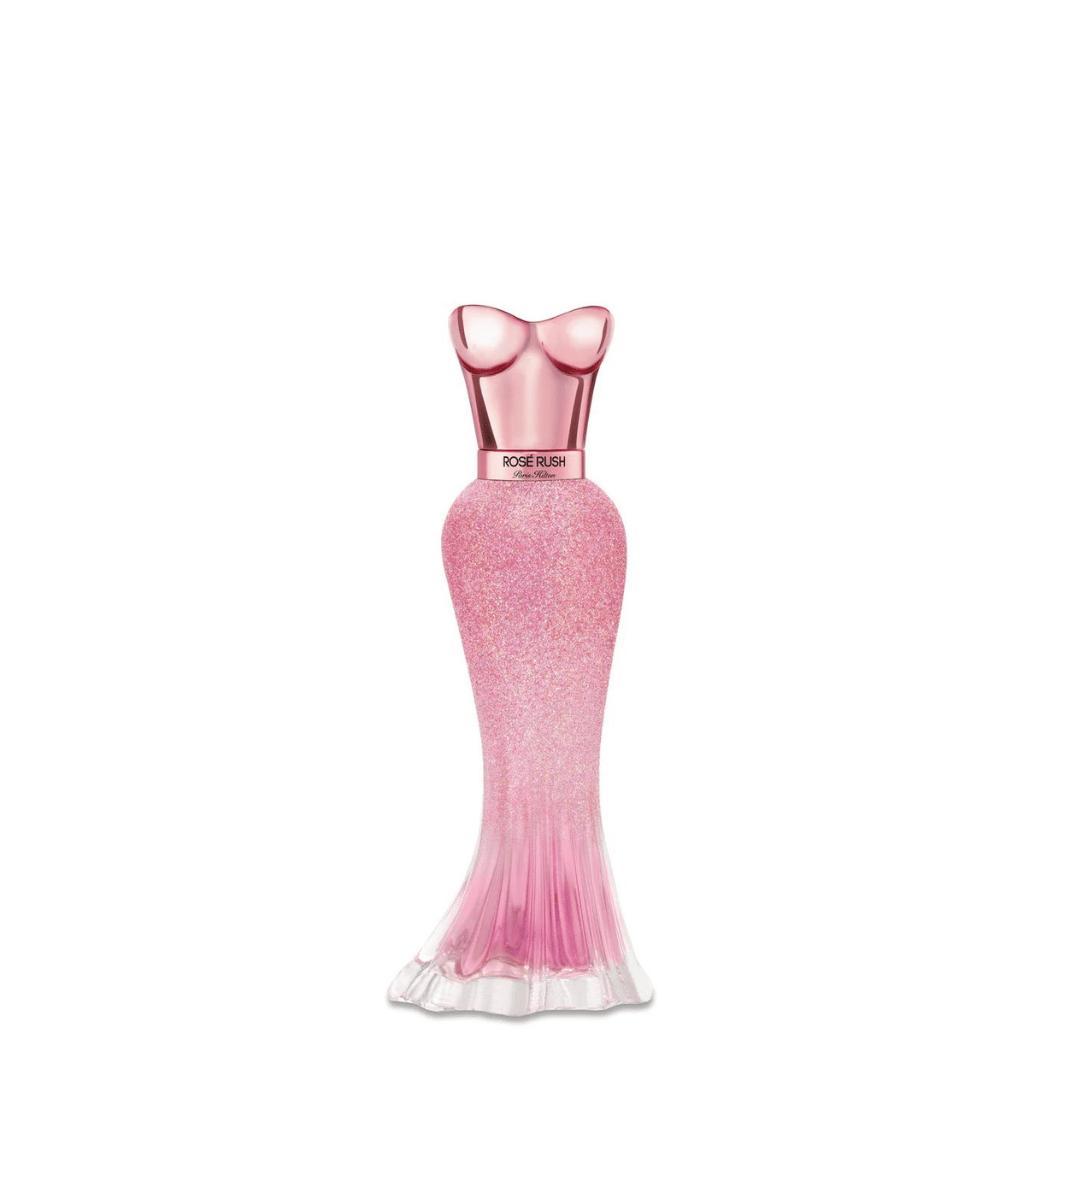 Paris Hilton Rosé Rush Eau De Parfum